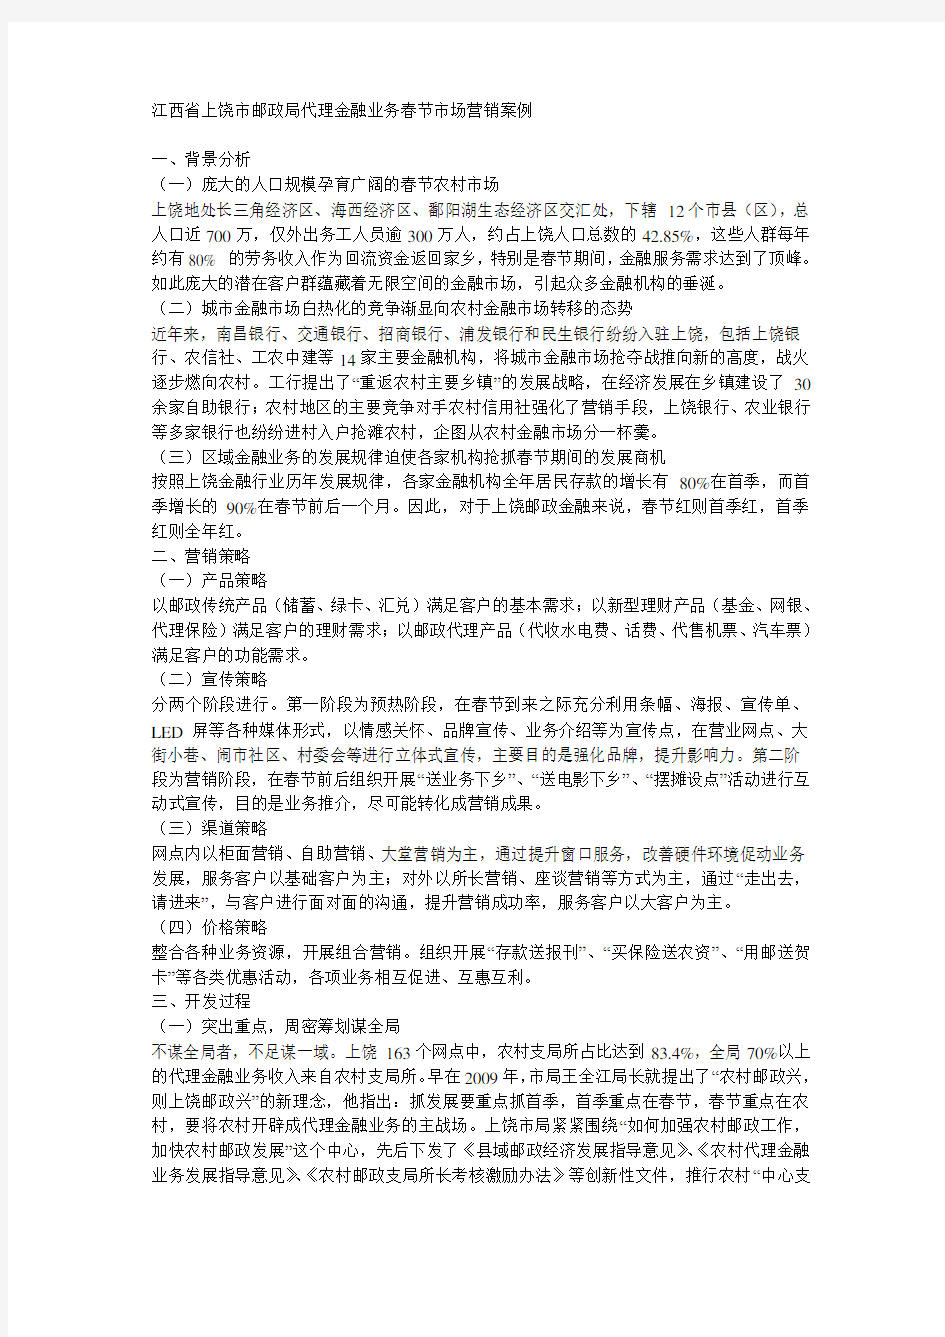 江西省上饶市邮政局代理金融业务春节市场营销案例